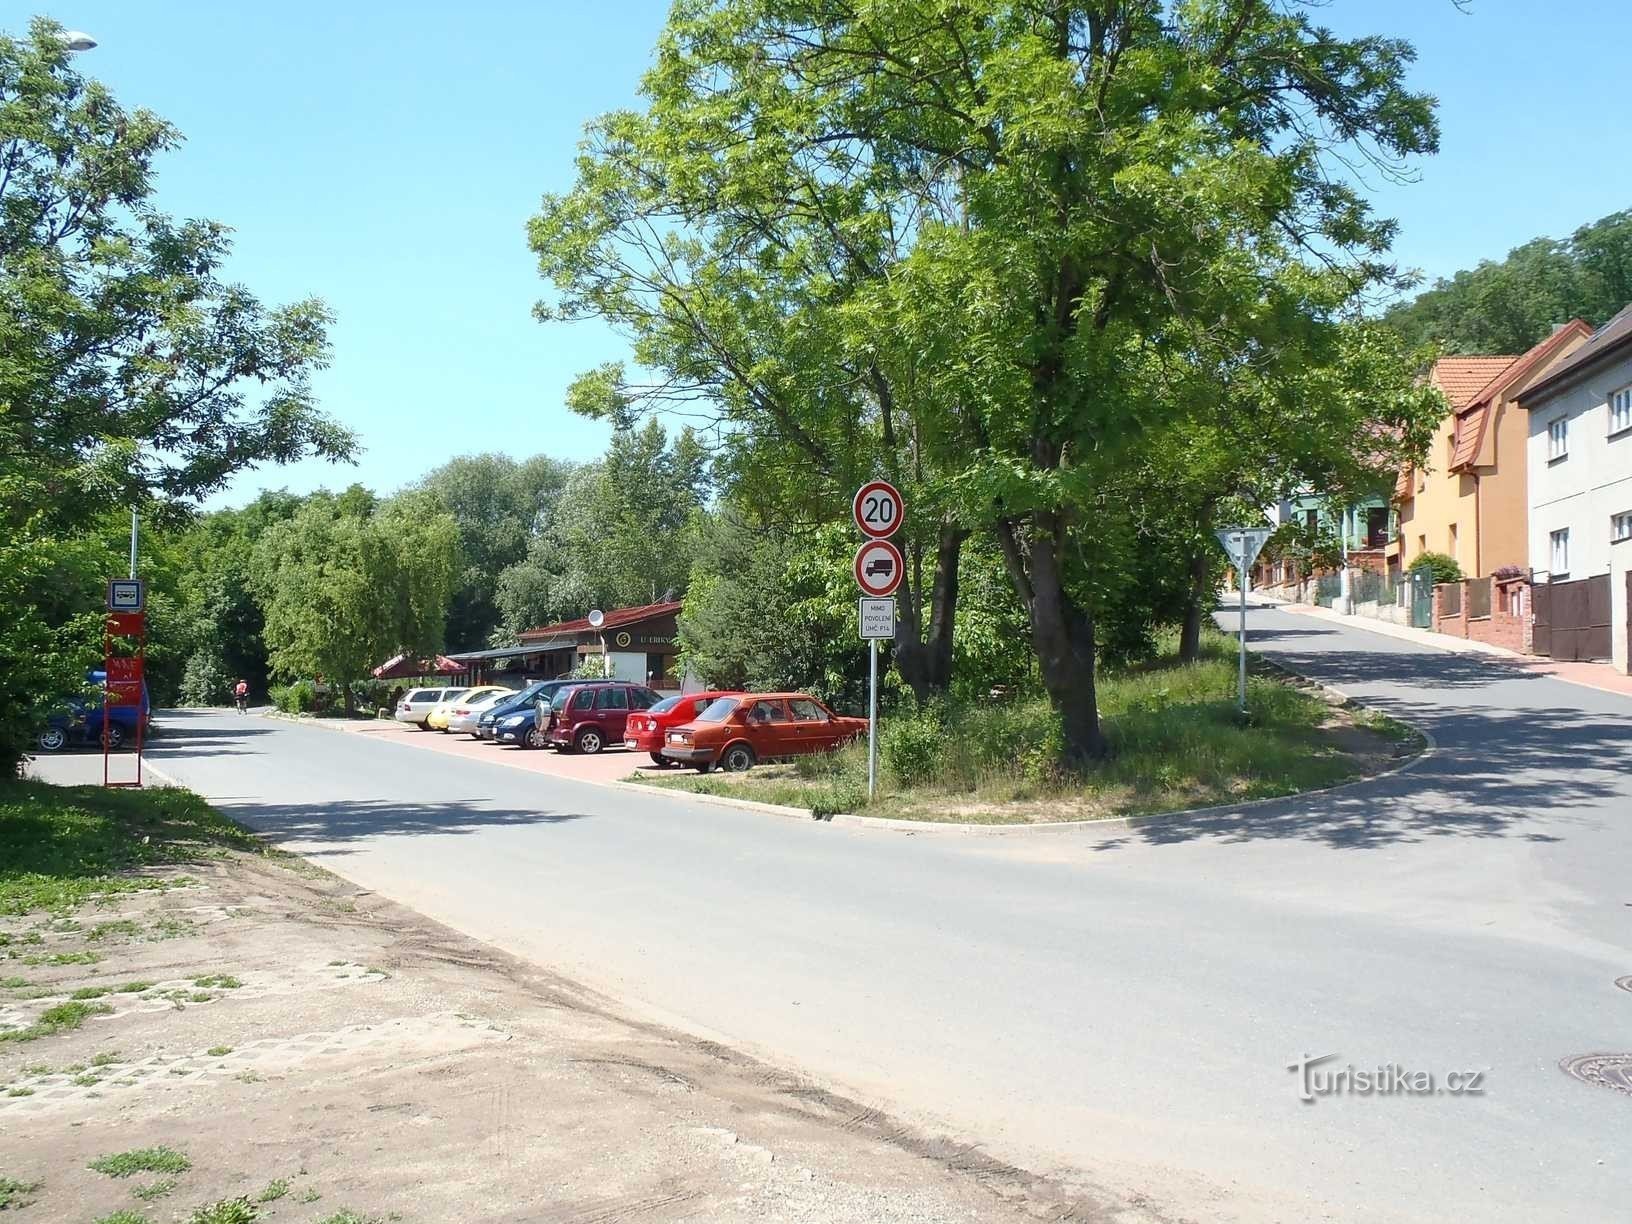 Tálinská og Lánská gaderne i Kyjy - 15.6.2012